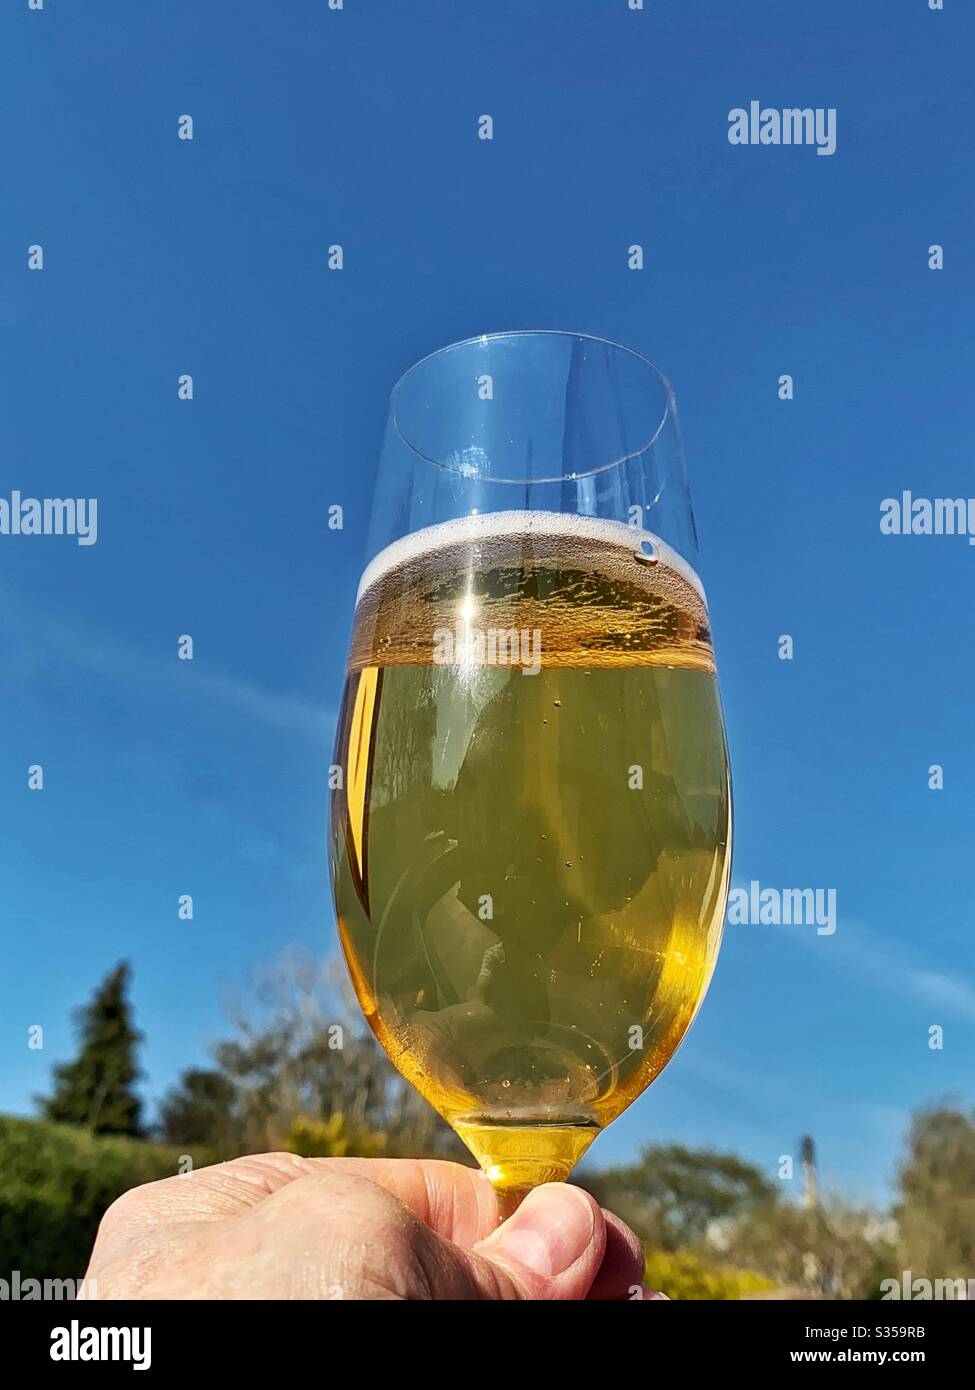 Vaso de cerveza lager dorada sostenido contra un cielo azul profundo Foto de stock